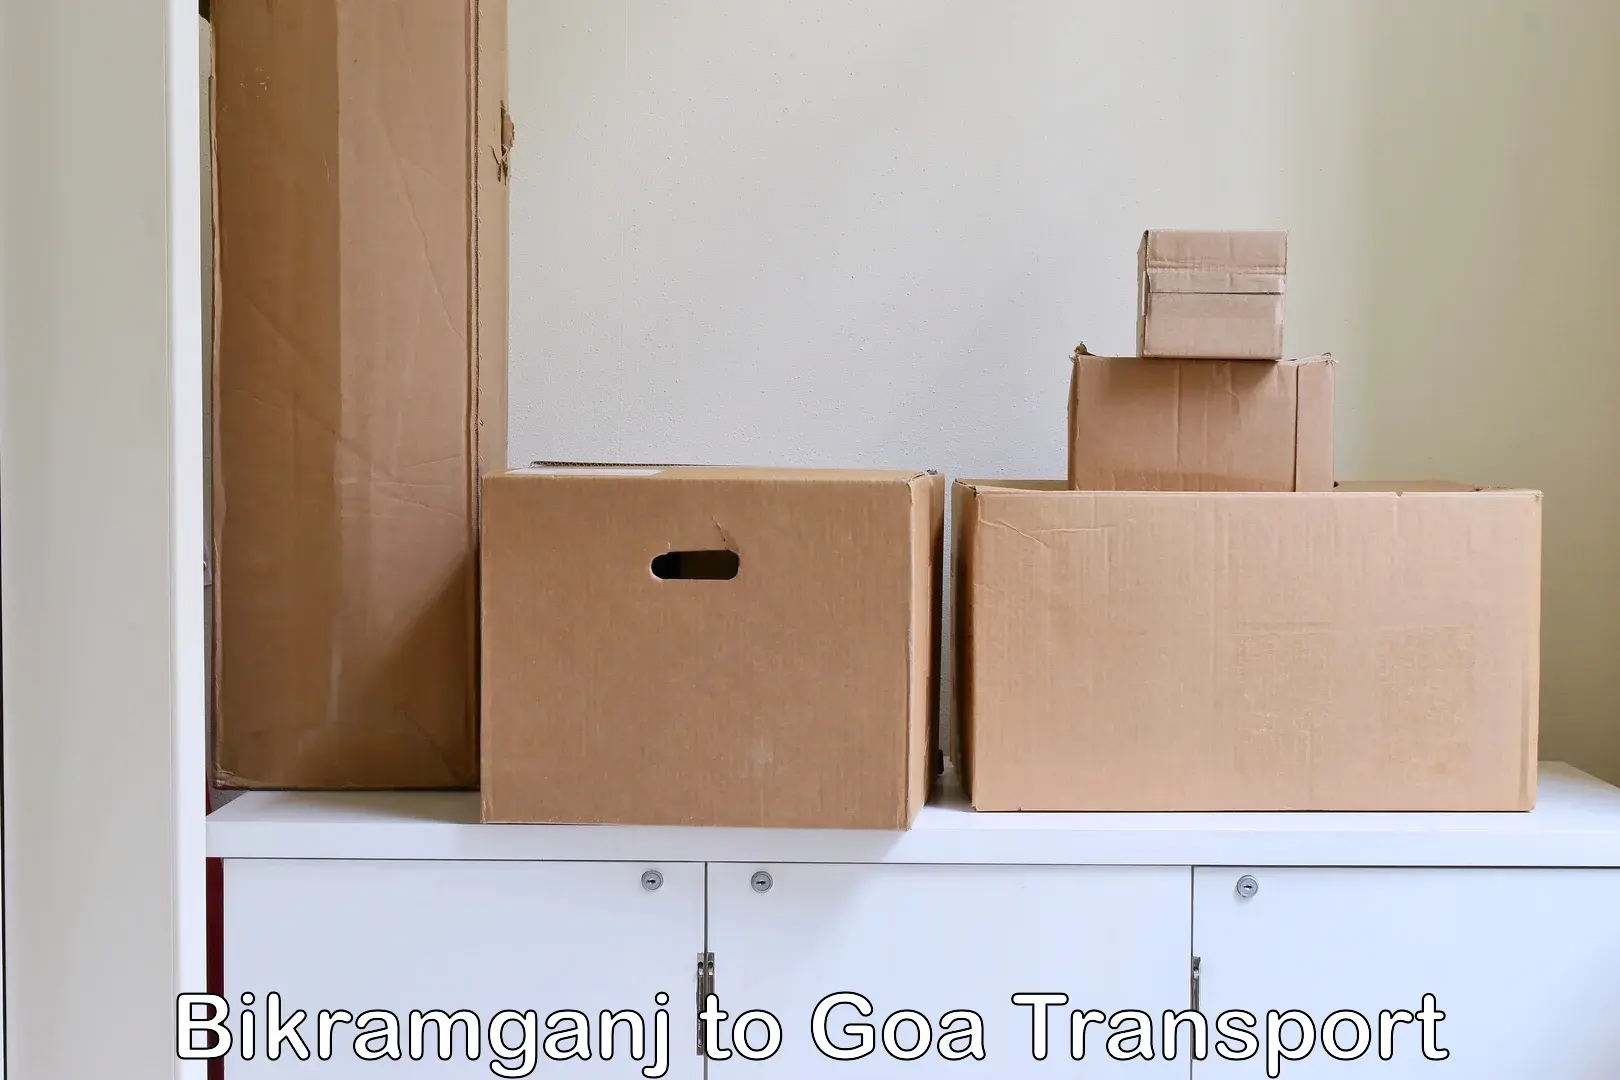 Road transport online services Bikramganj to Goa